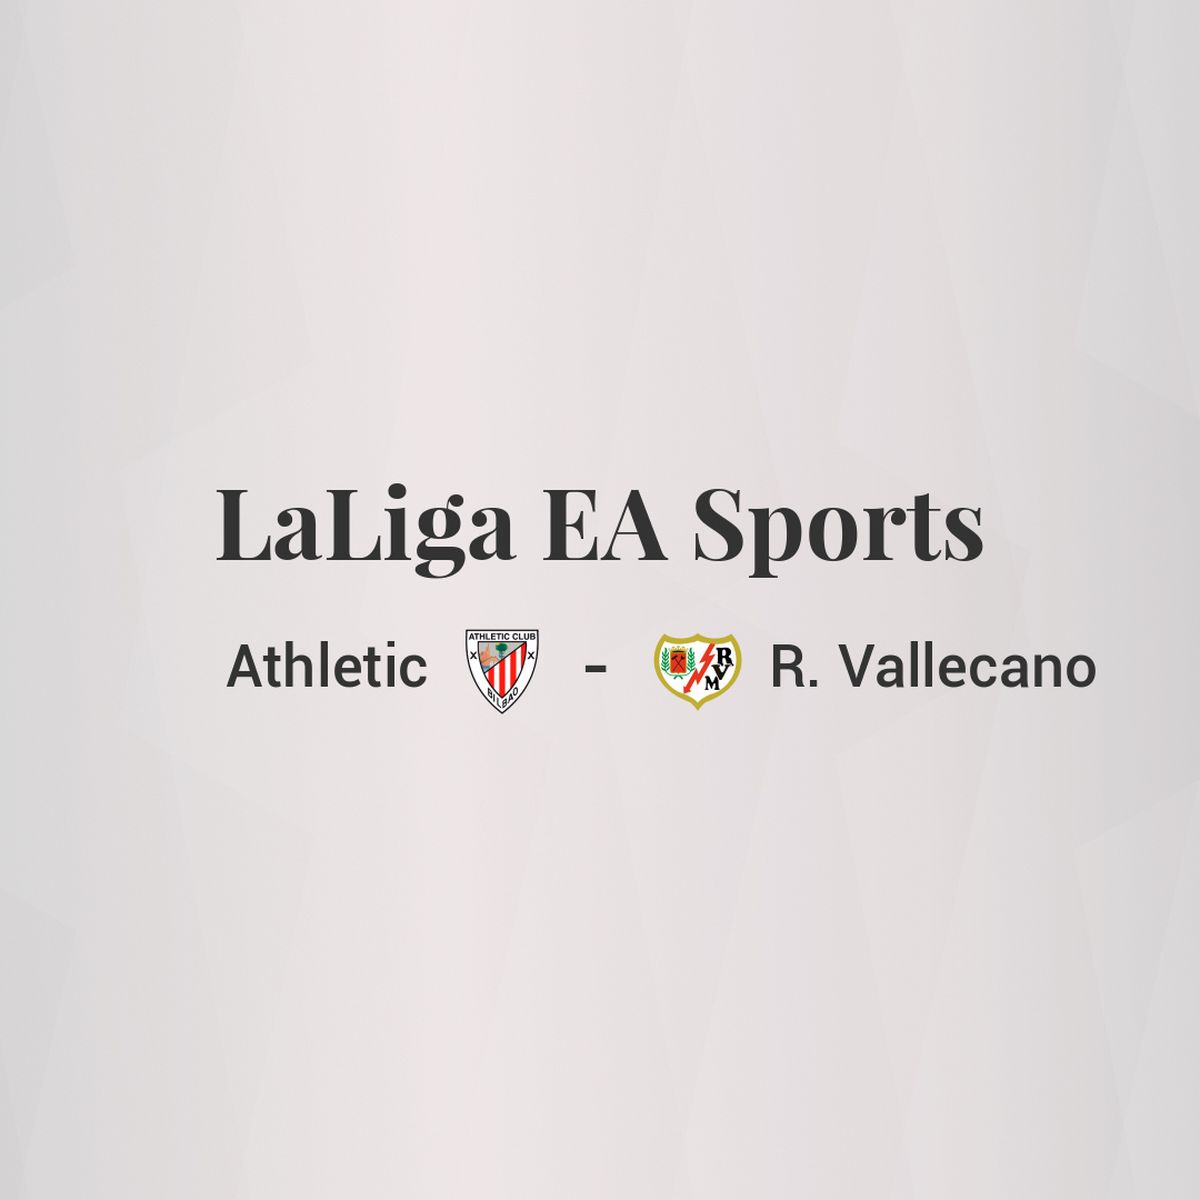 Rayo Vallecano - Athletic Club Bilbao (LALIGA EA SPORTS)